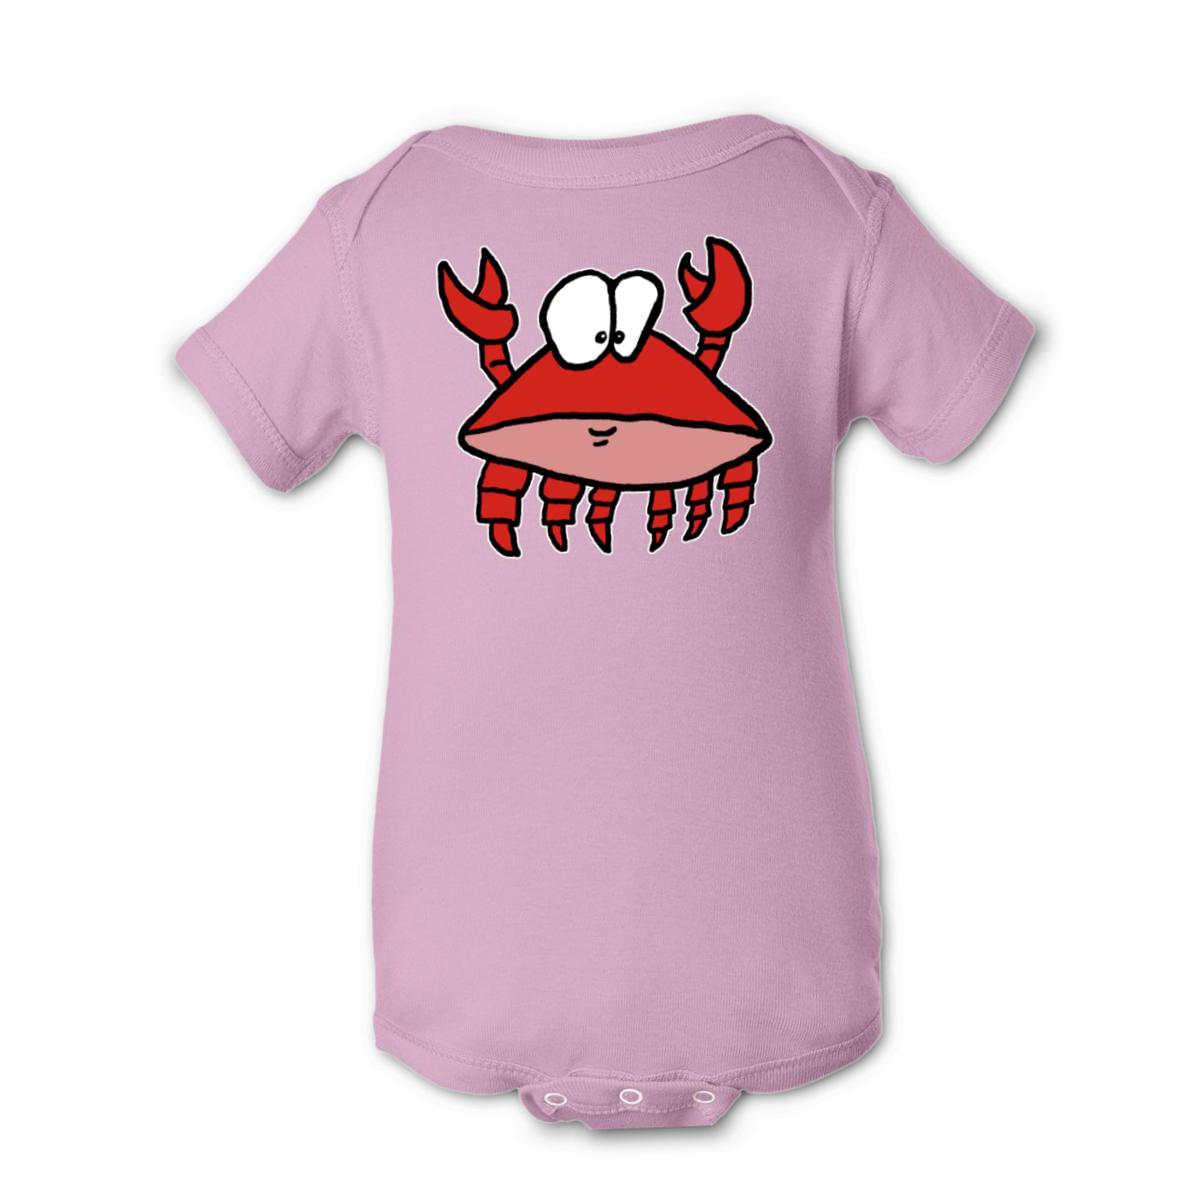 Crab 2.0 Onesie 18M pink